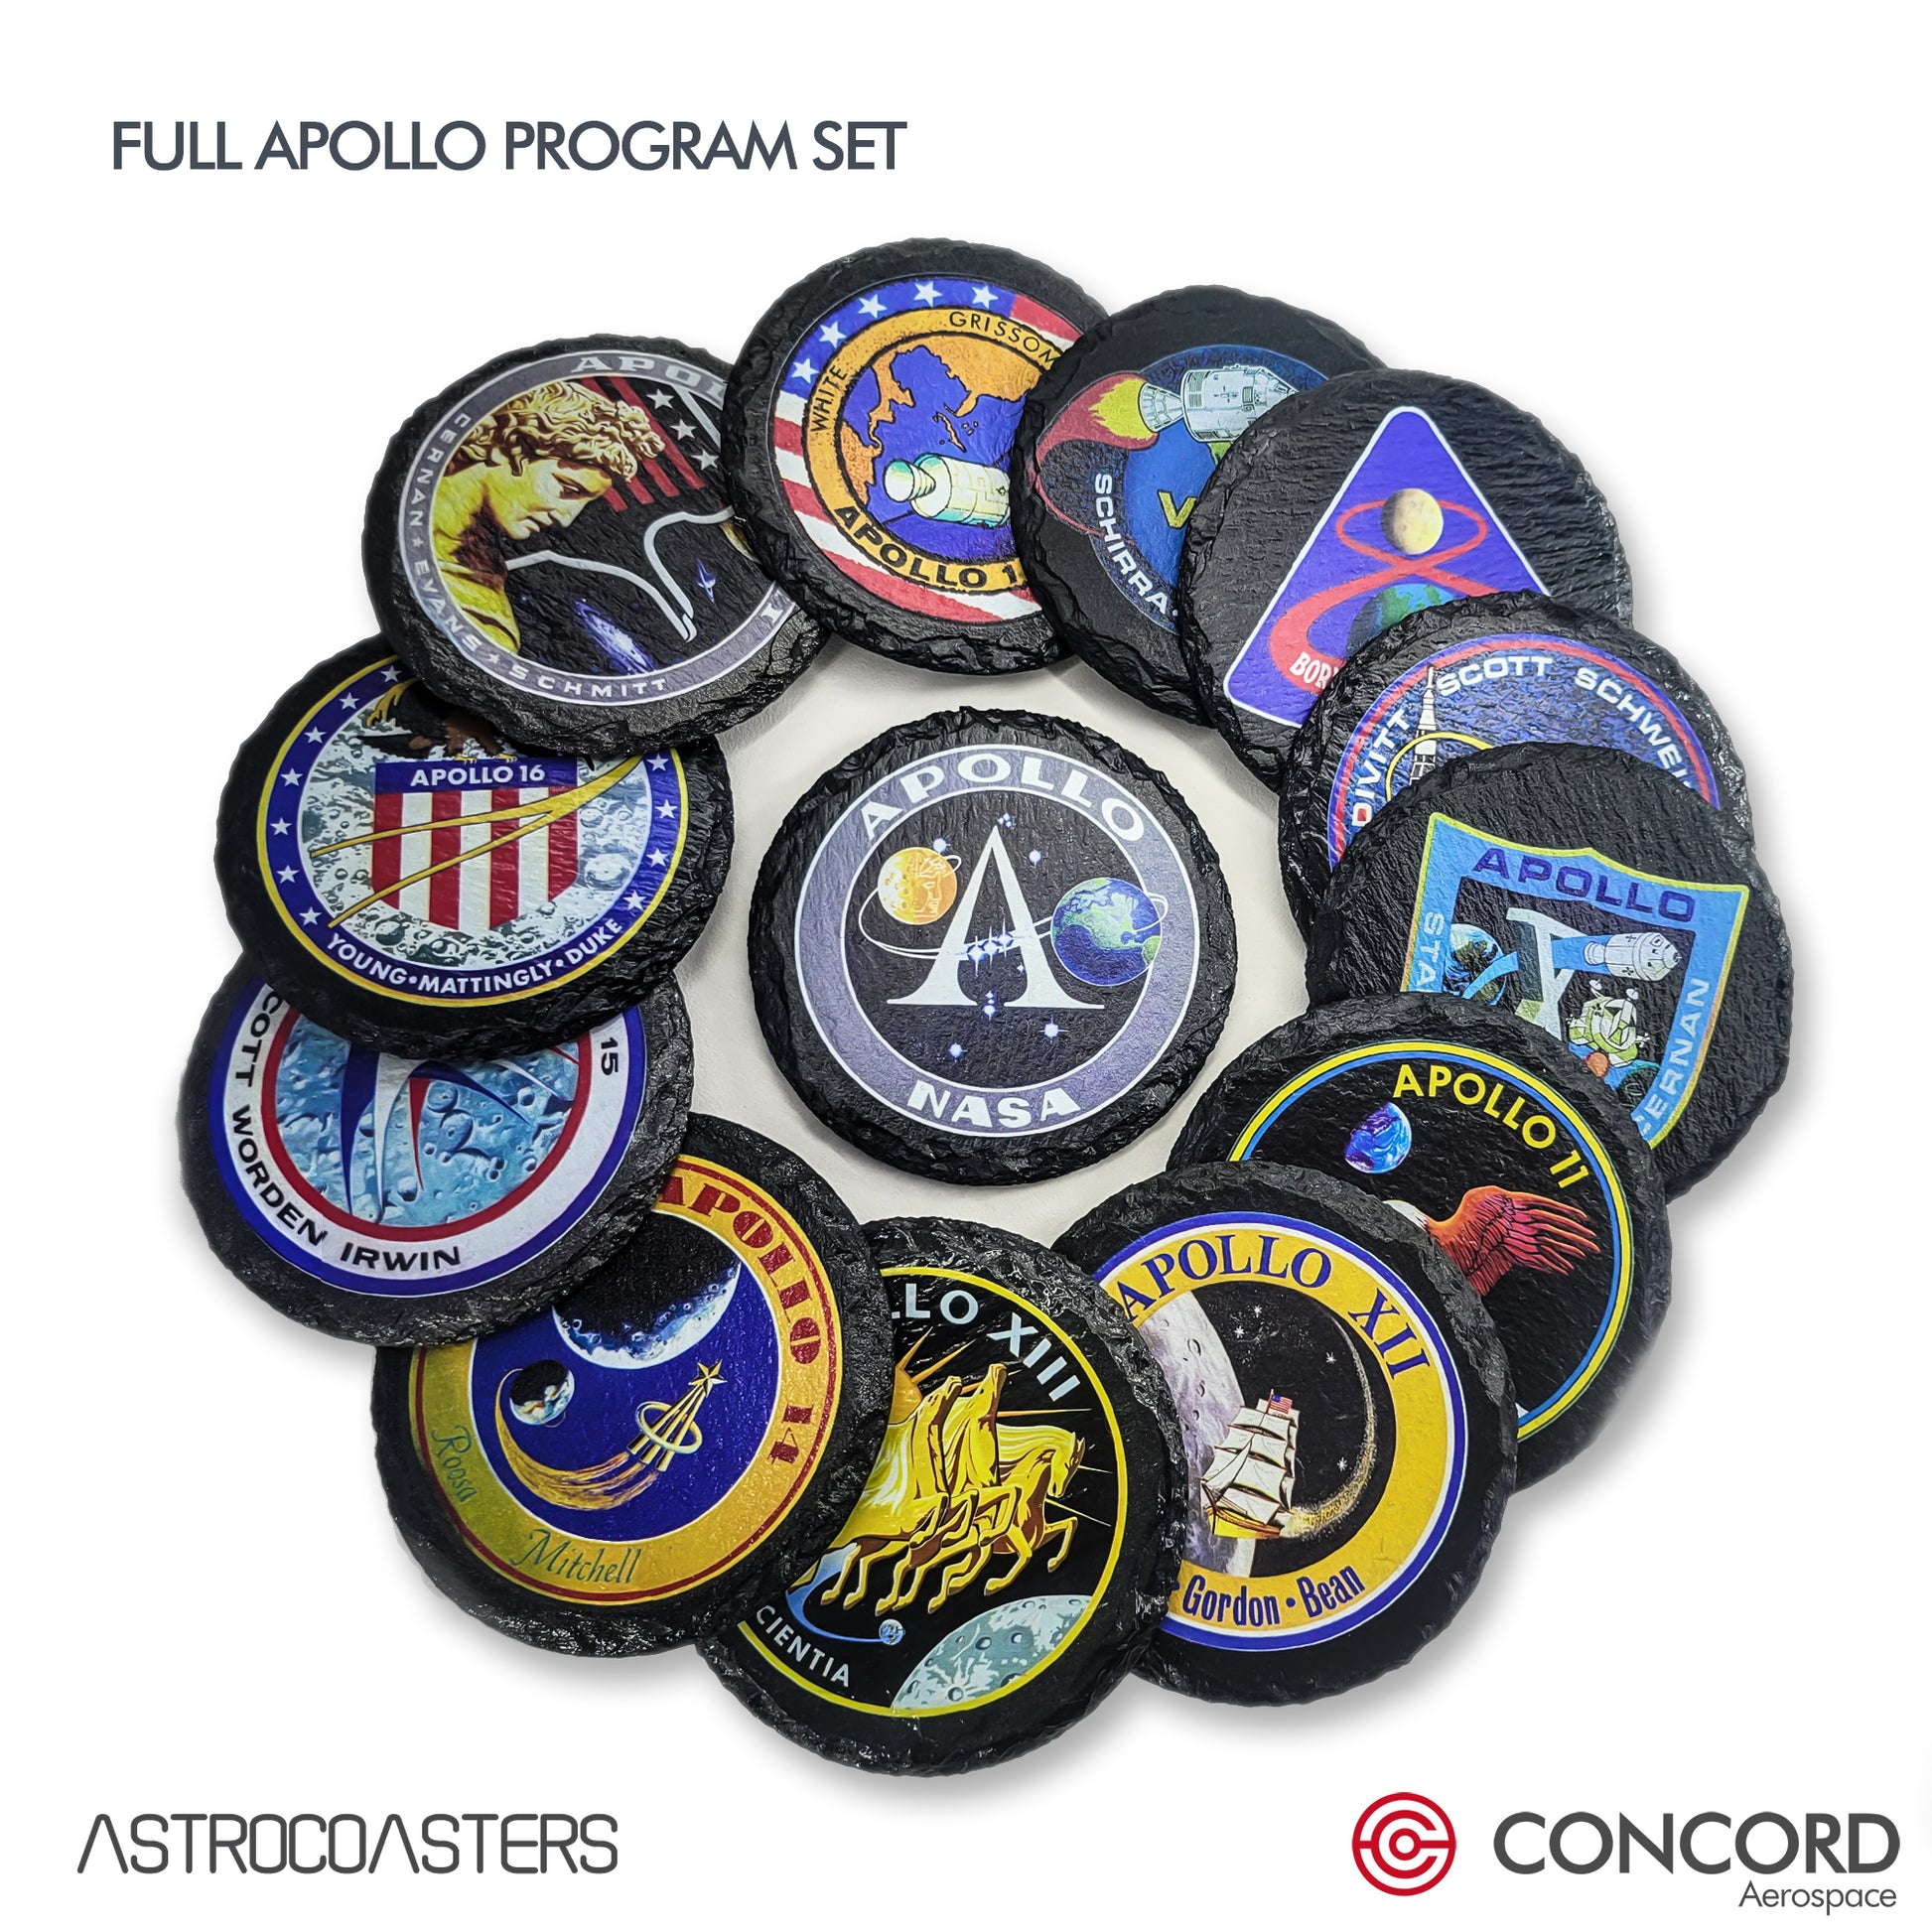 APOLLO 16 MISSION - SLATE COASTER - Concord Aerospace Concord Aerospace Concord Aerospace Coasters